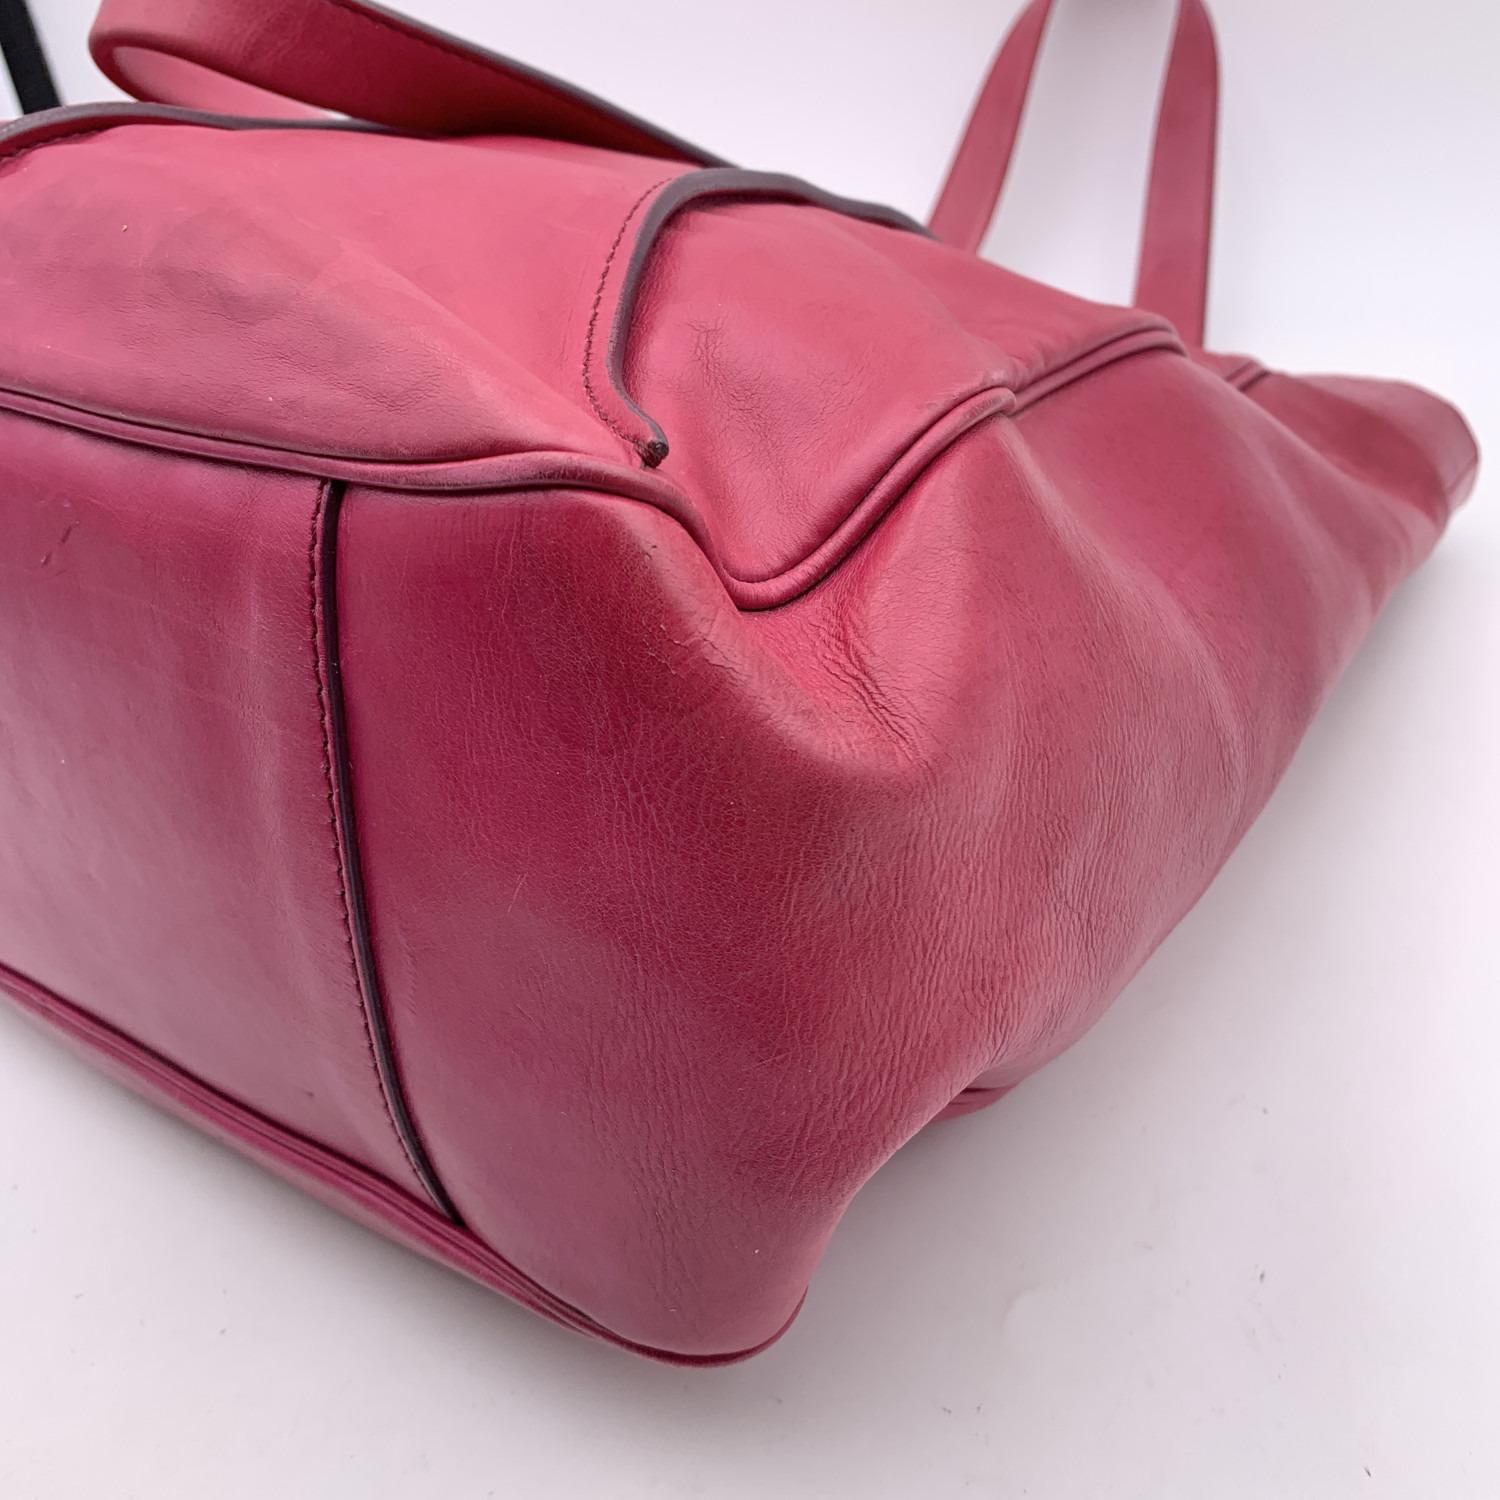 Celine - Sac fourre-tout porté épaule en cuir rose et violet avec sphères 6